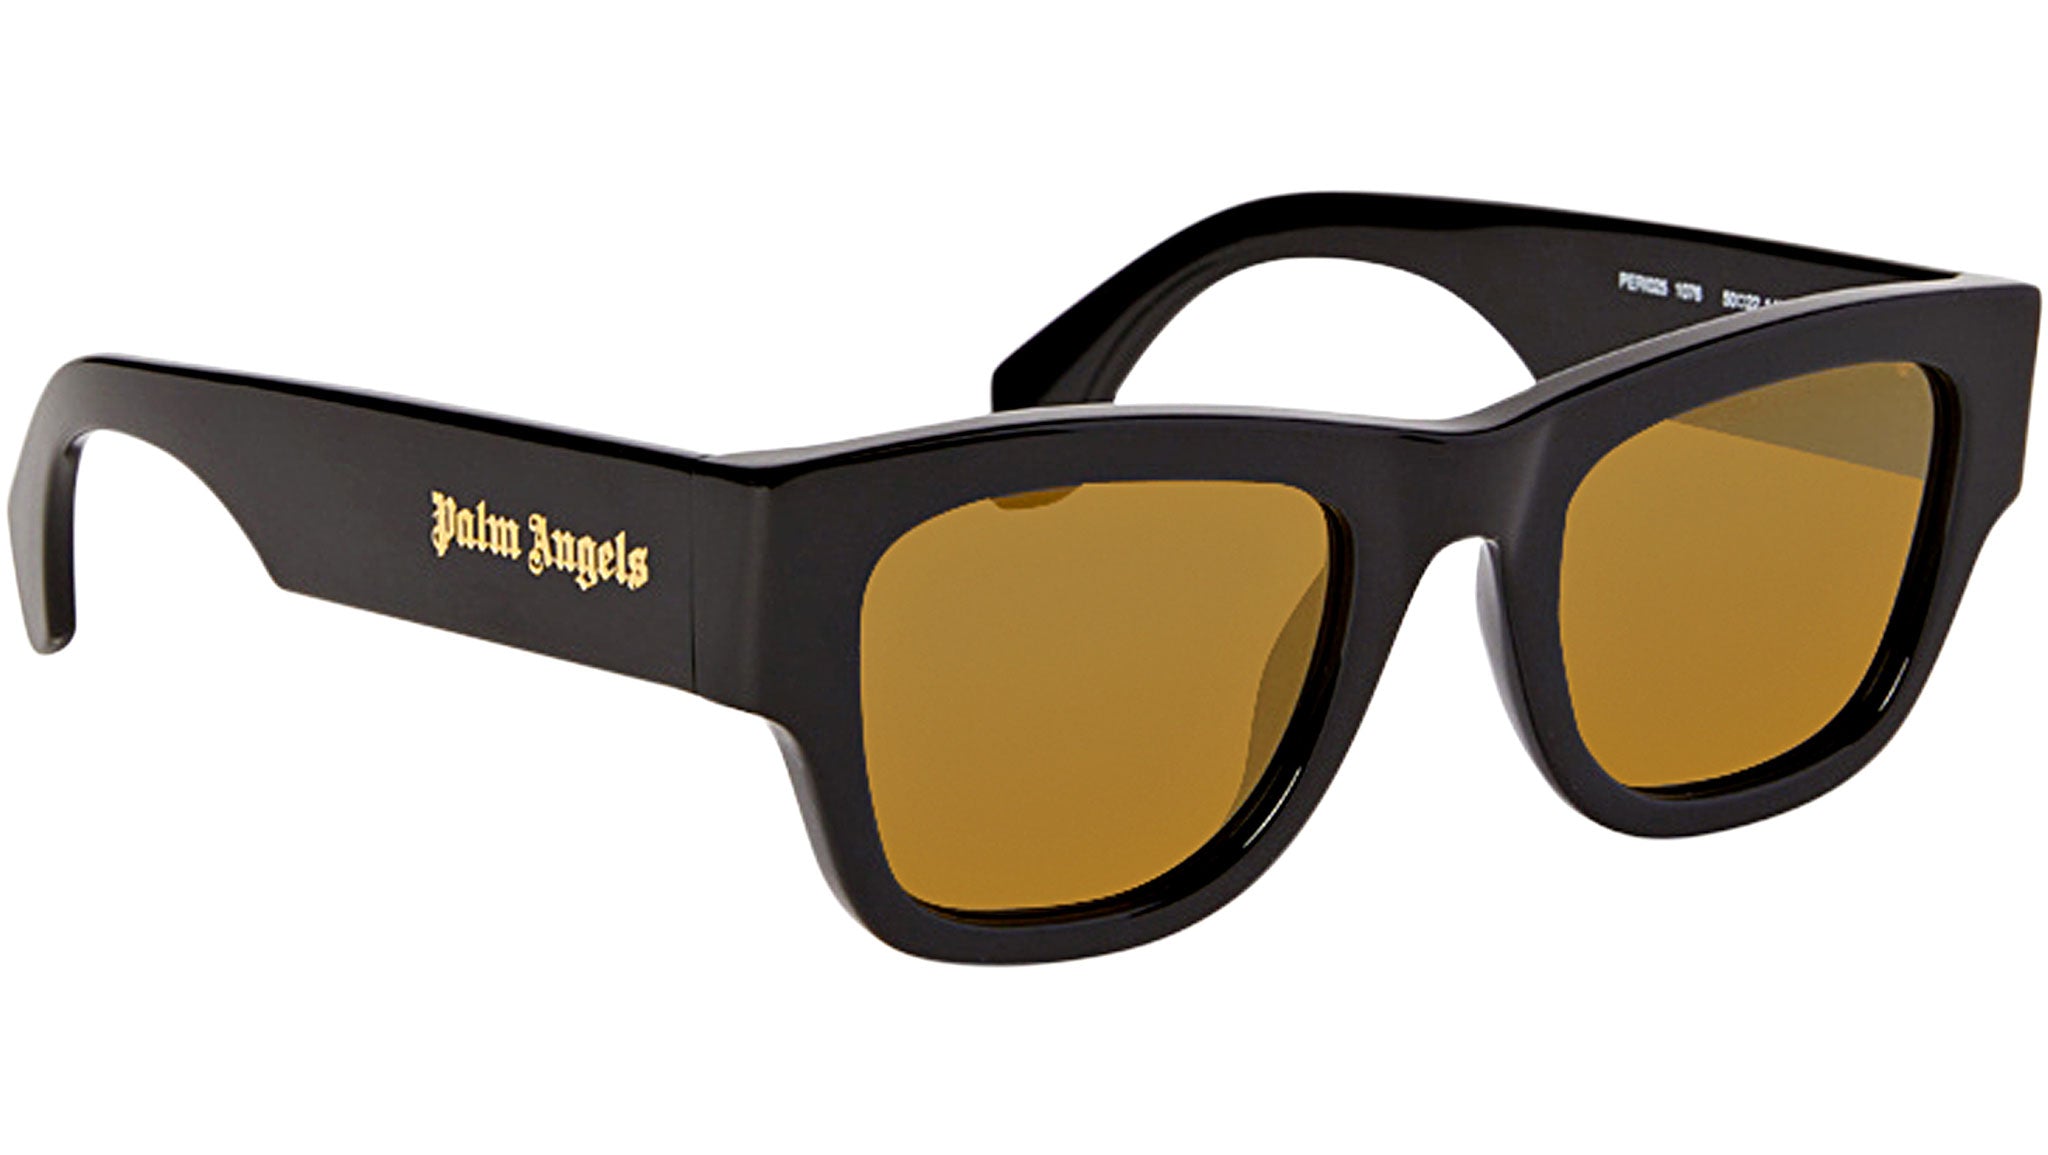 Palm Angels sunglasses NEWPORT SUNGLASSES black